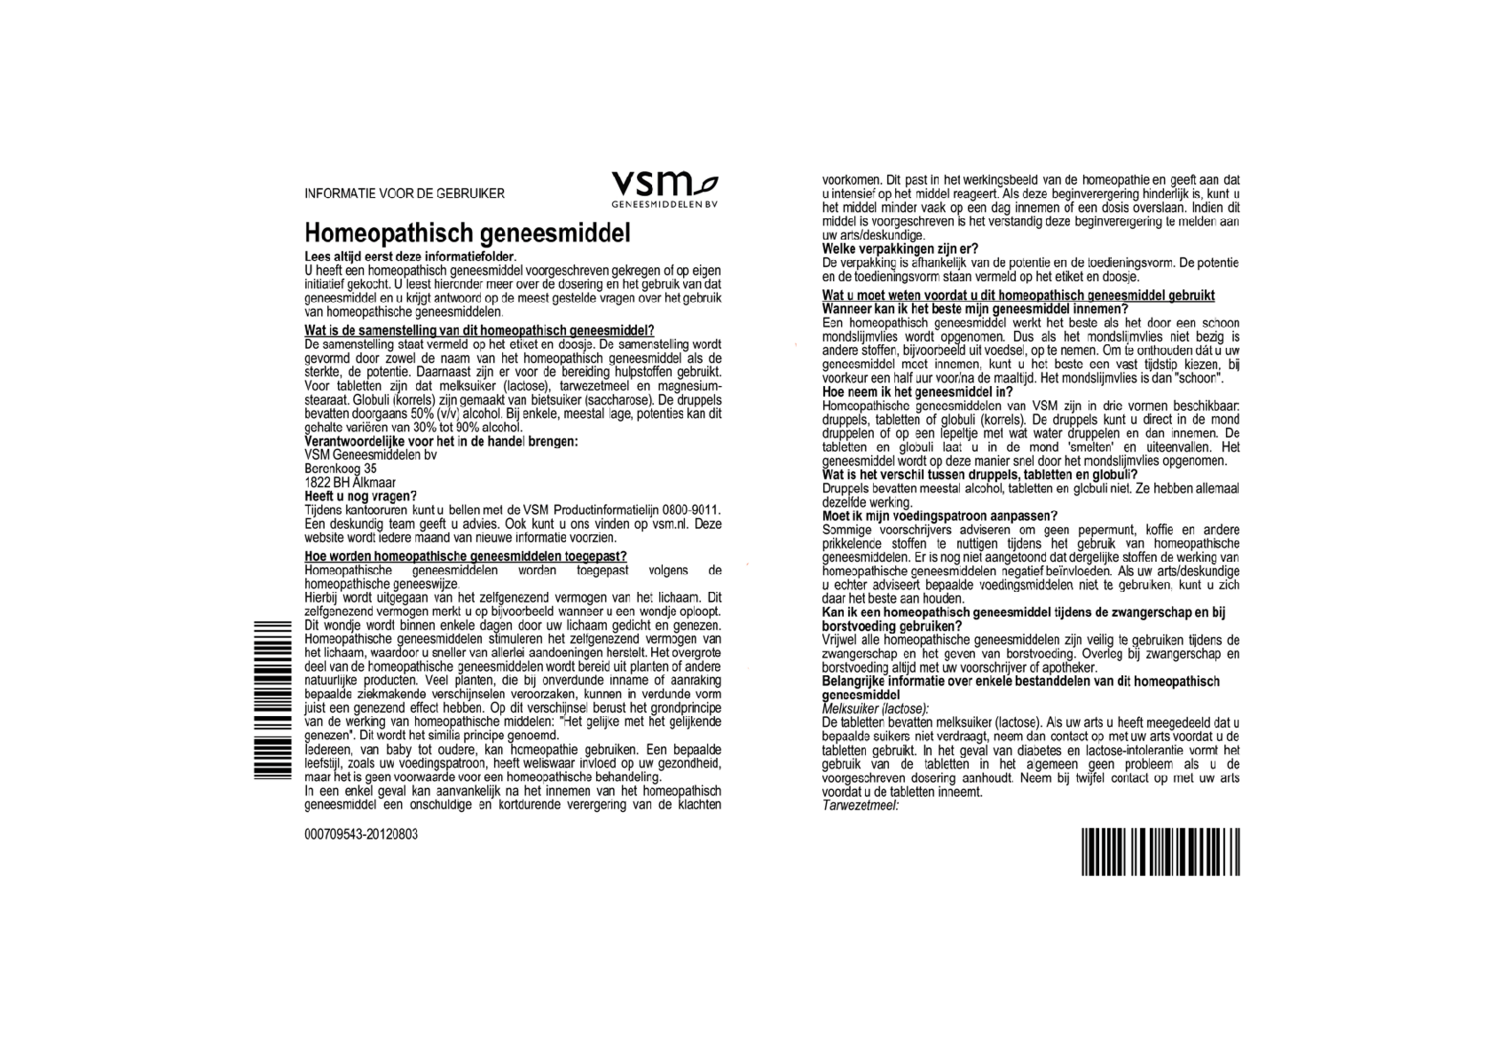 Solidago Virgaurea D6 Tabletten afbeelding van document #1, bijsluiter